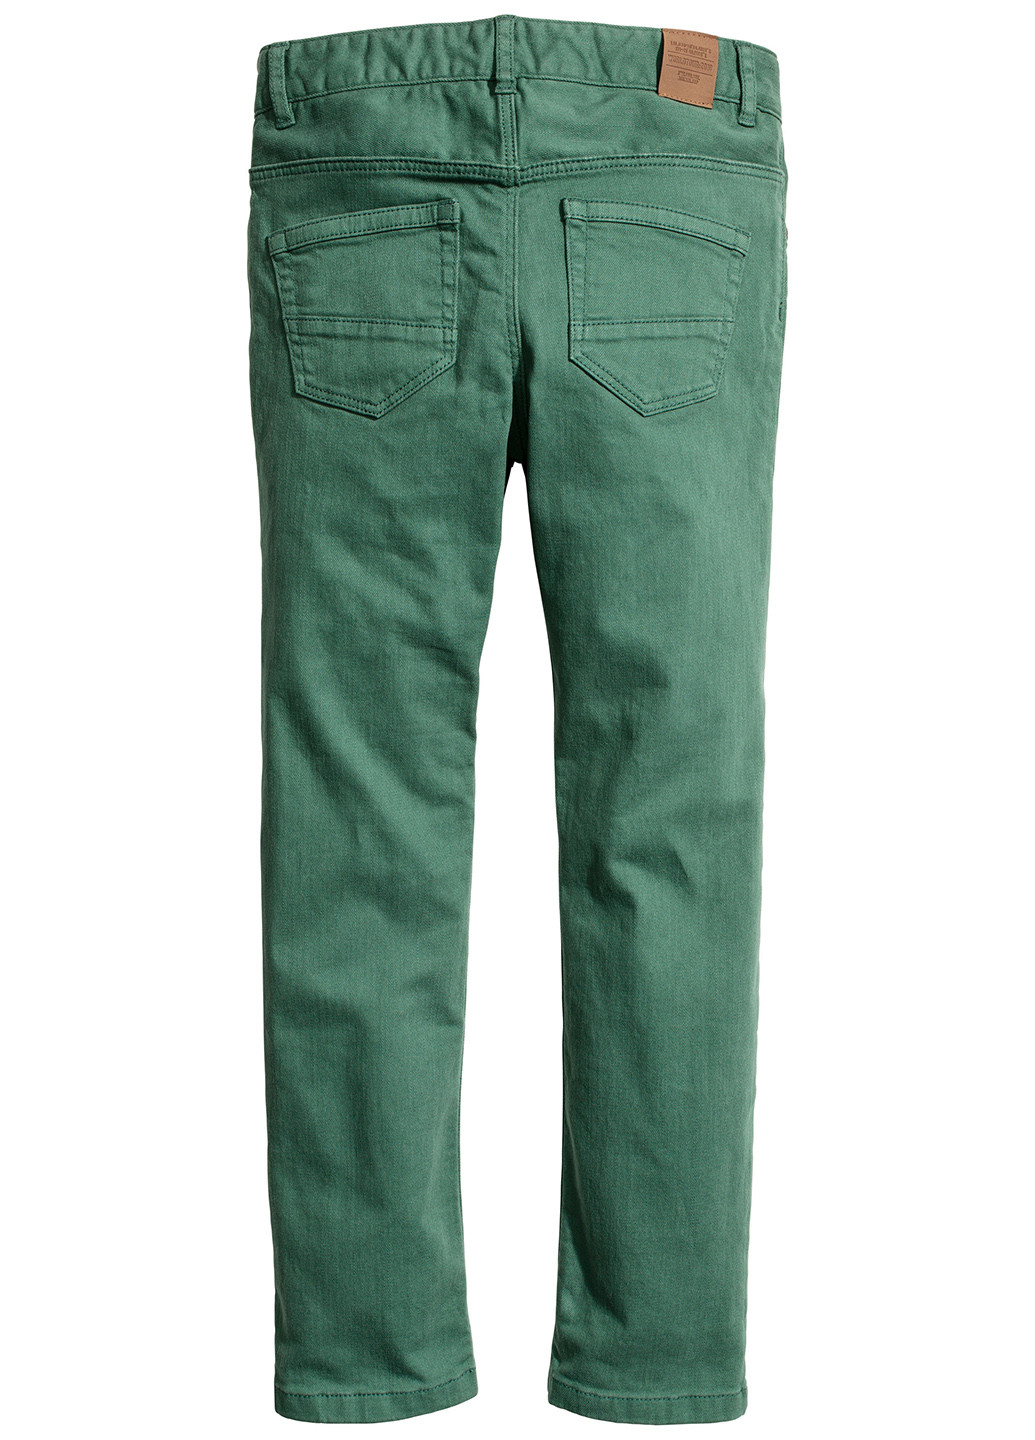 Зеленые демисезонные джинсы H&M